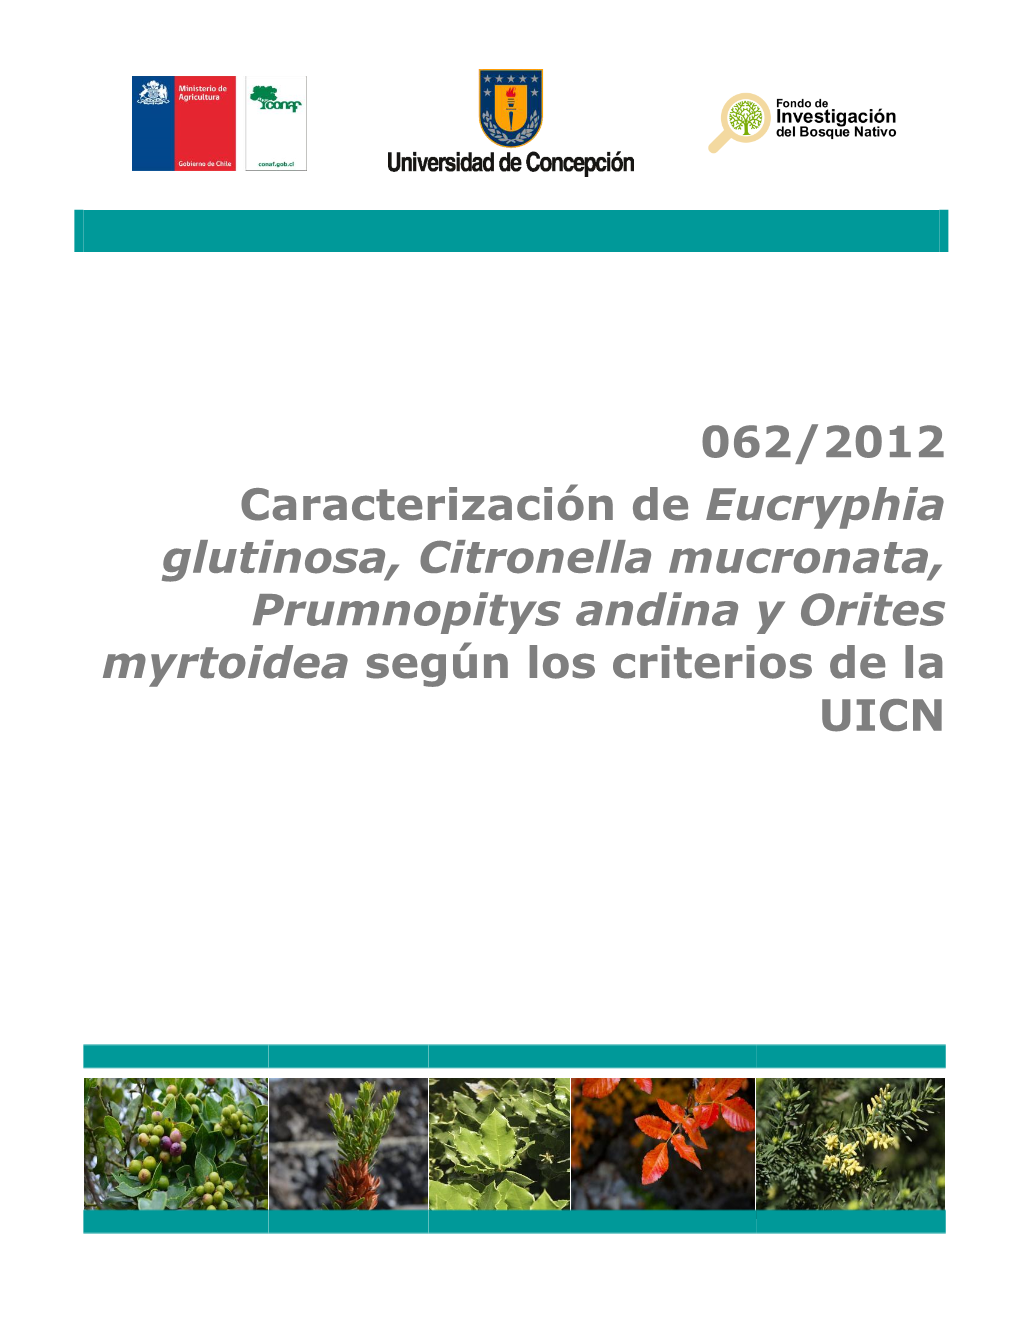 062/2012 Caracterización De Eucryphia Glutinosa, Citronella Mucronata, Prumnopitys Andina Y Orites Myrtoidea Según Los Criterios De La UICN